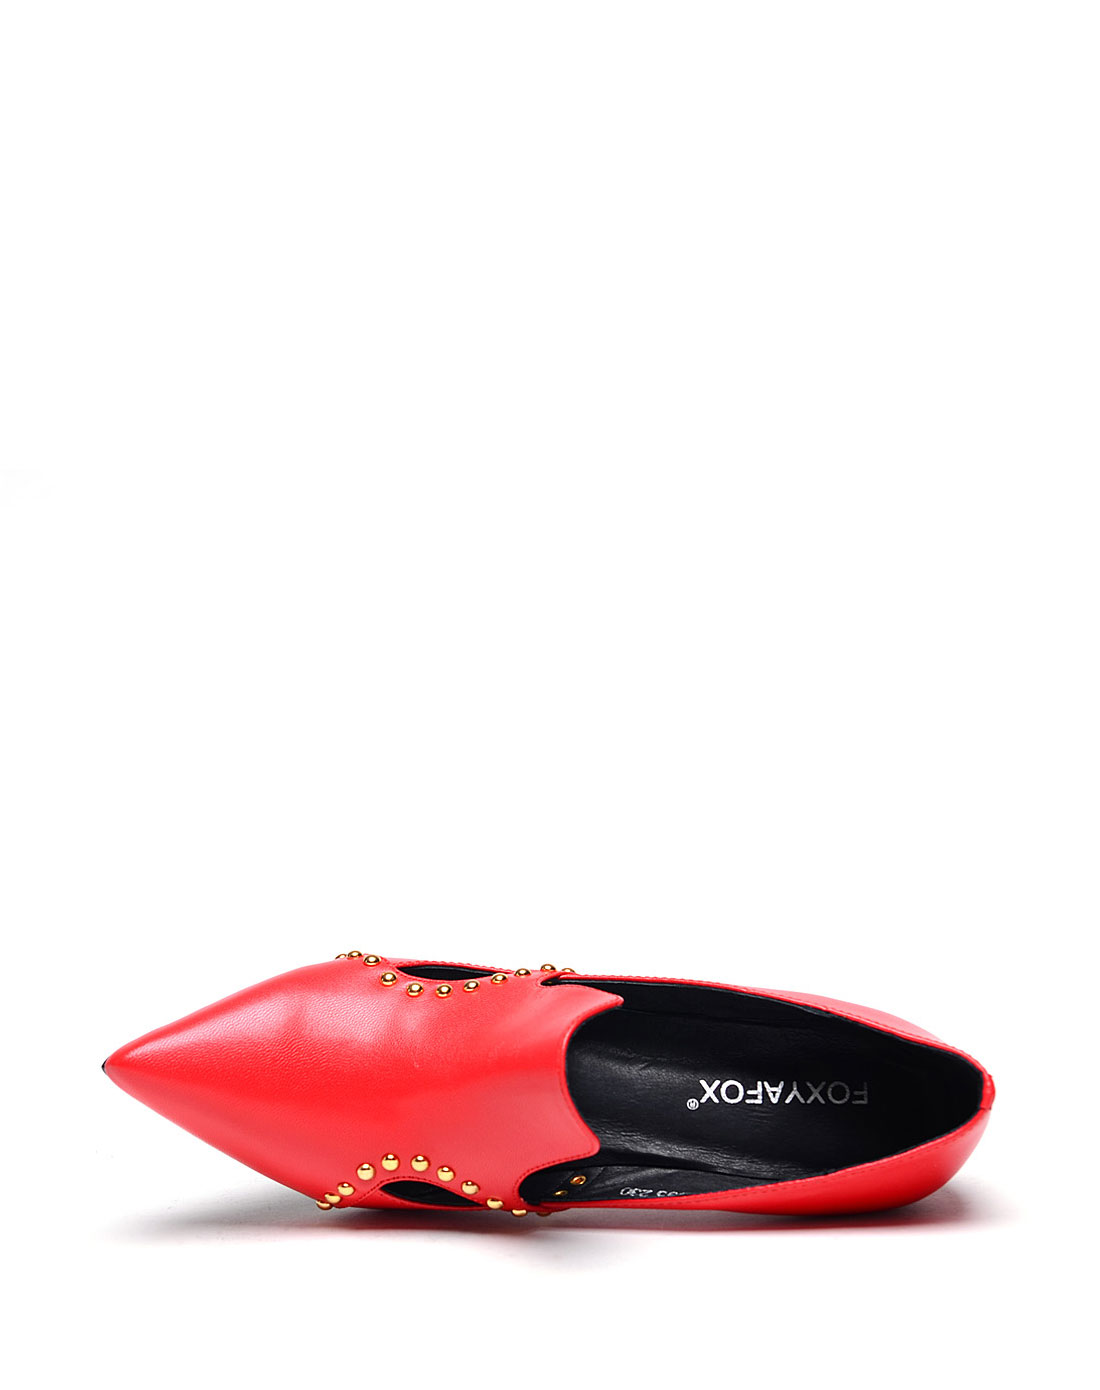 [FOXYAFOX]性感风铆钉羊皮革单鞋(尺码标准)
编号: A0209D1A99